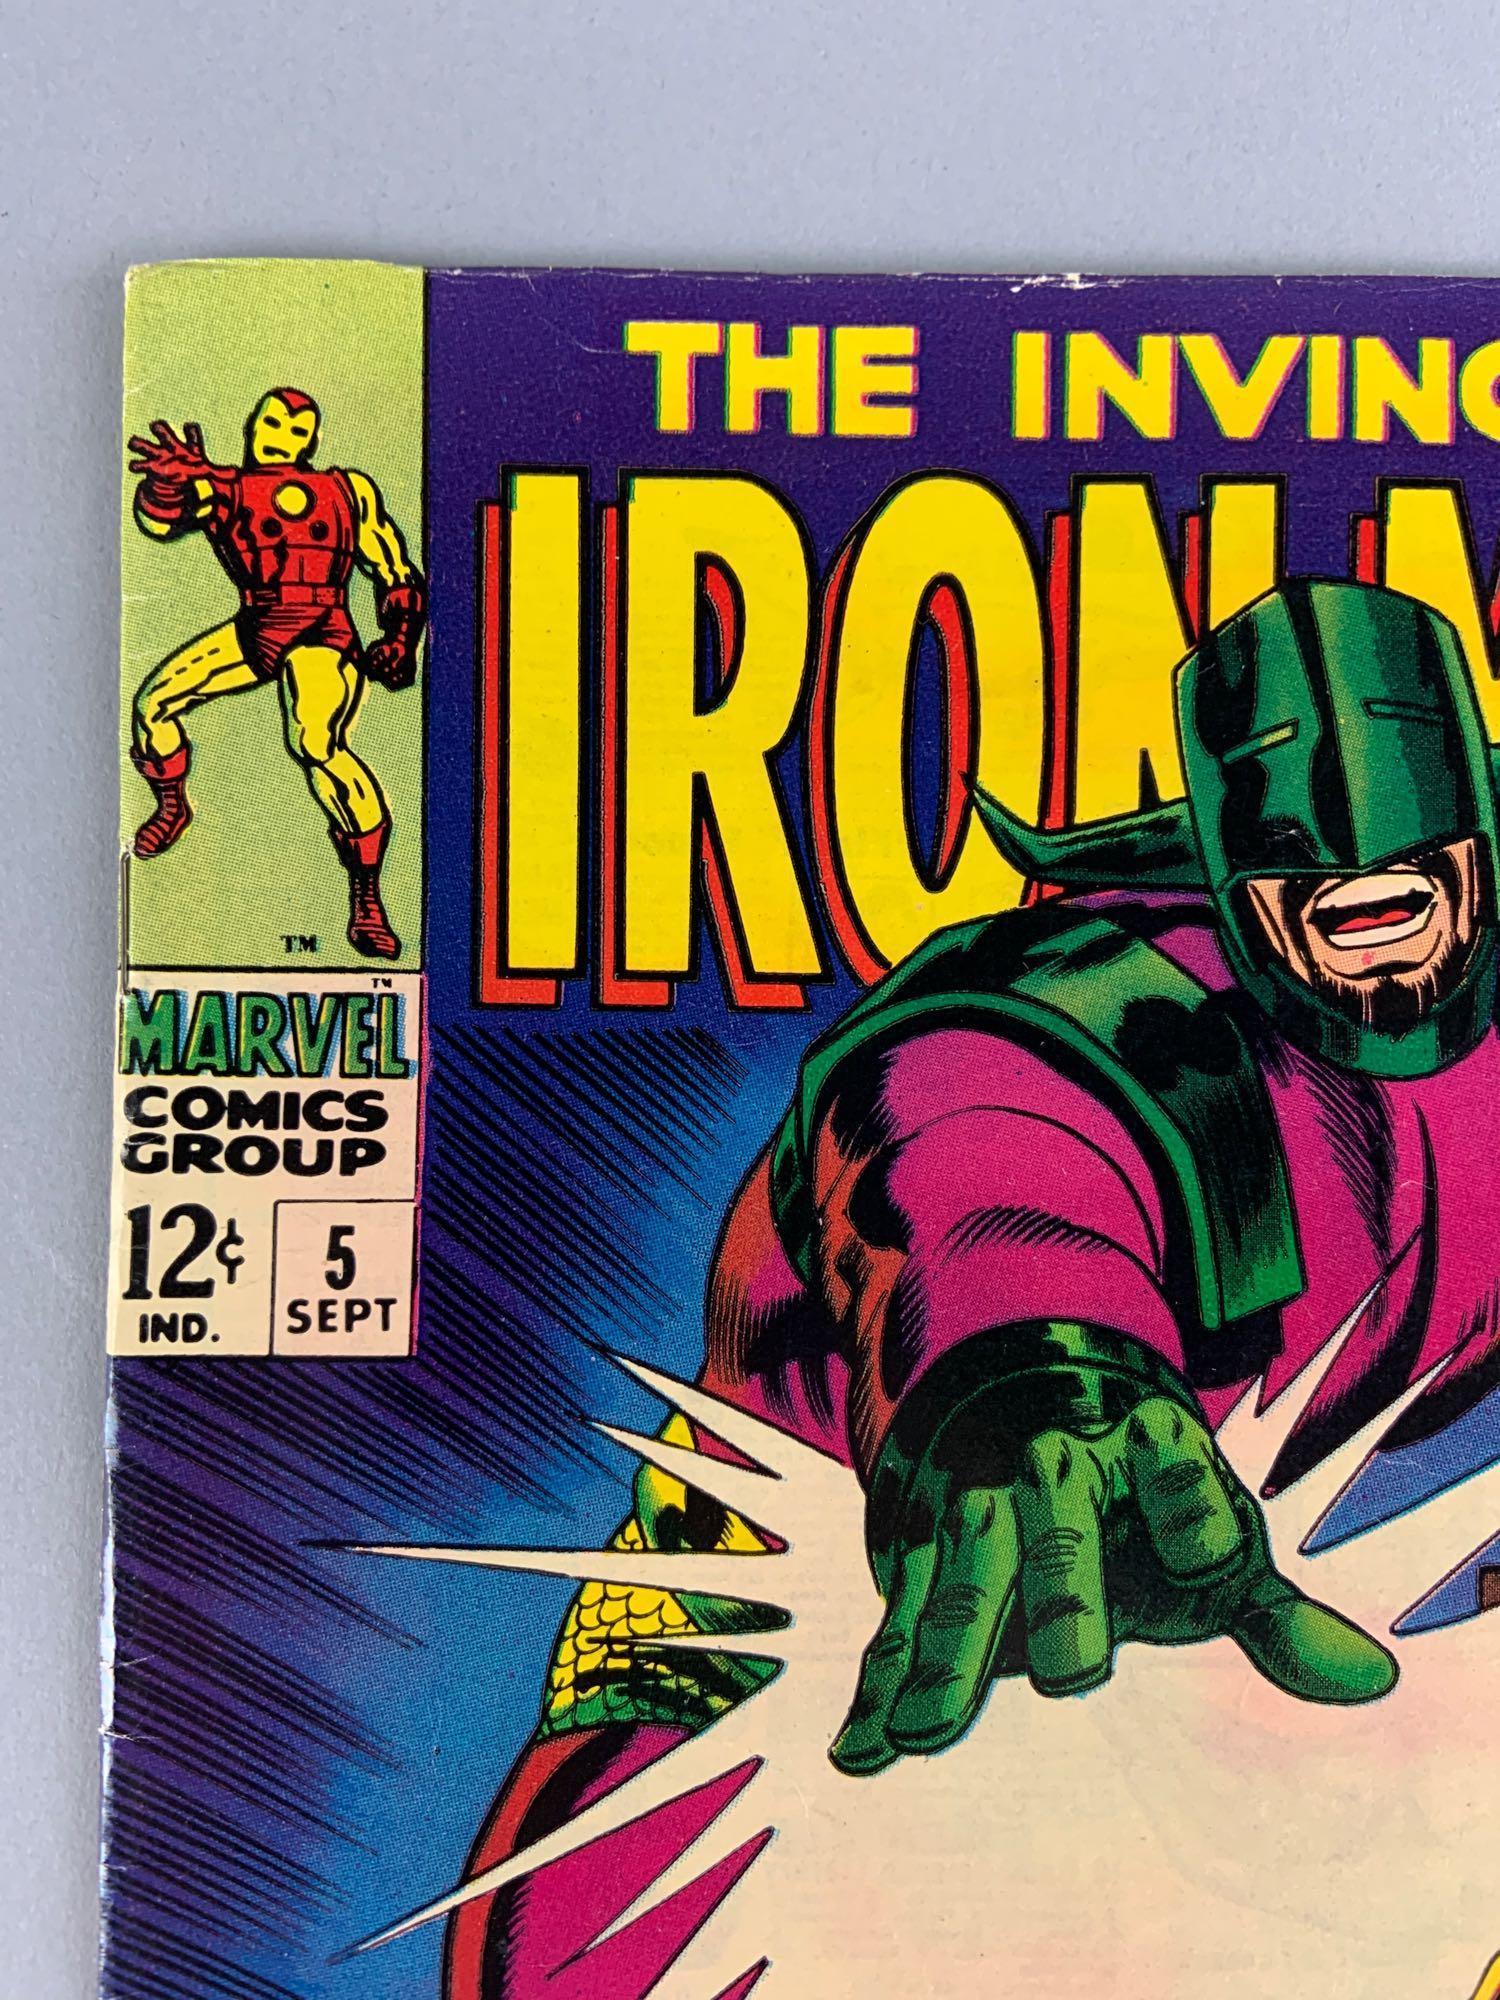 Marvel Comics The Invincible Iron Man No. 5 Comic Book